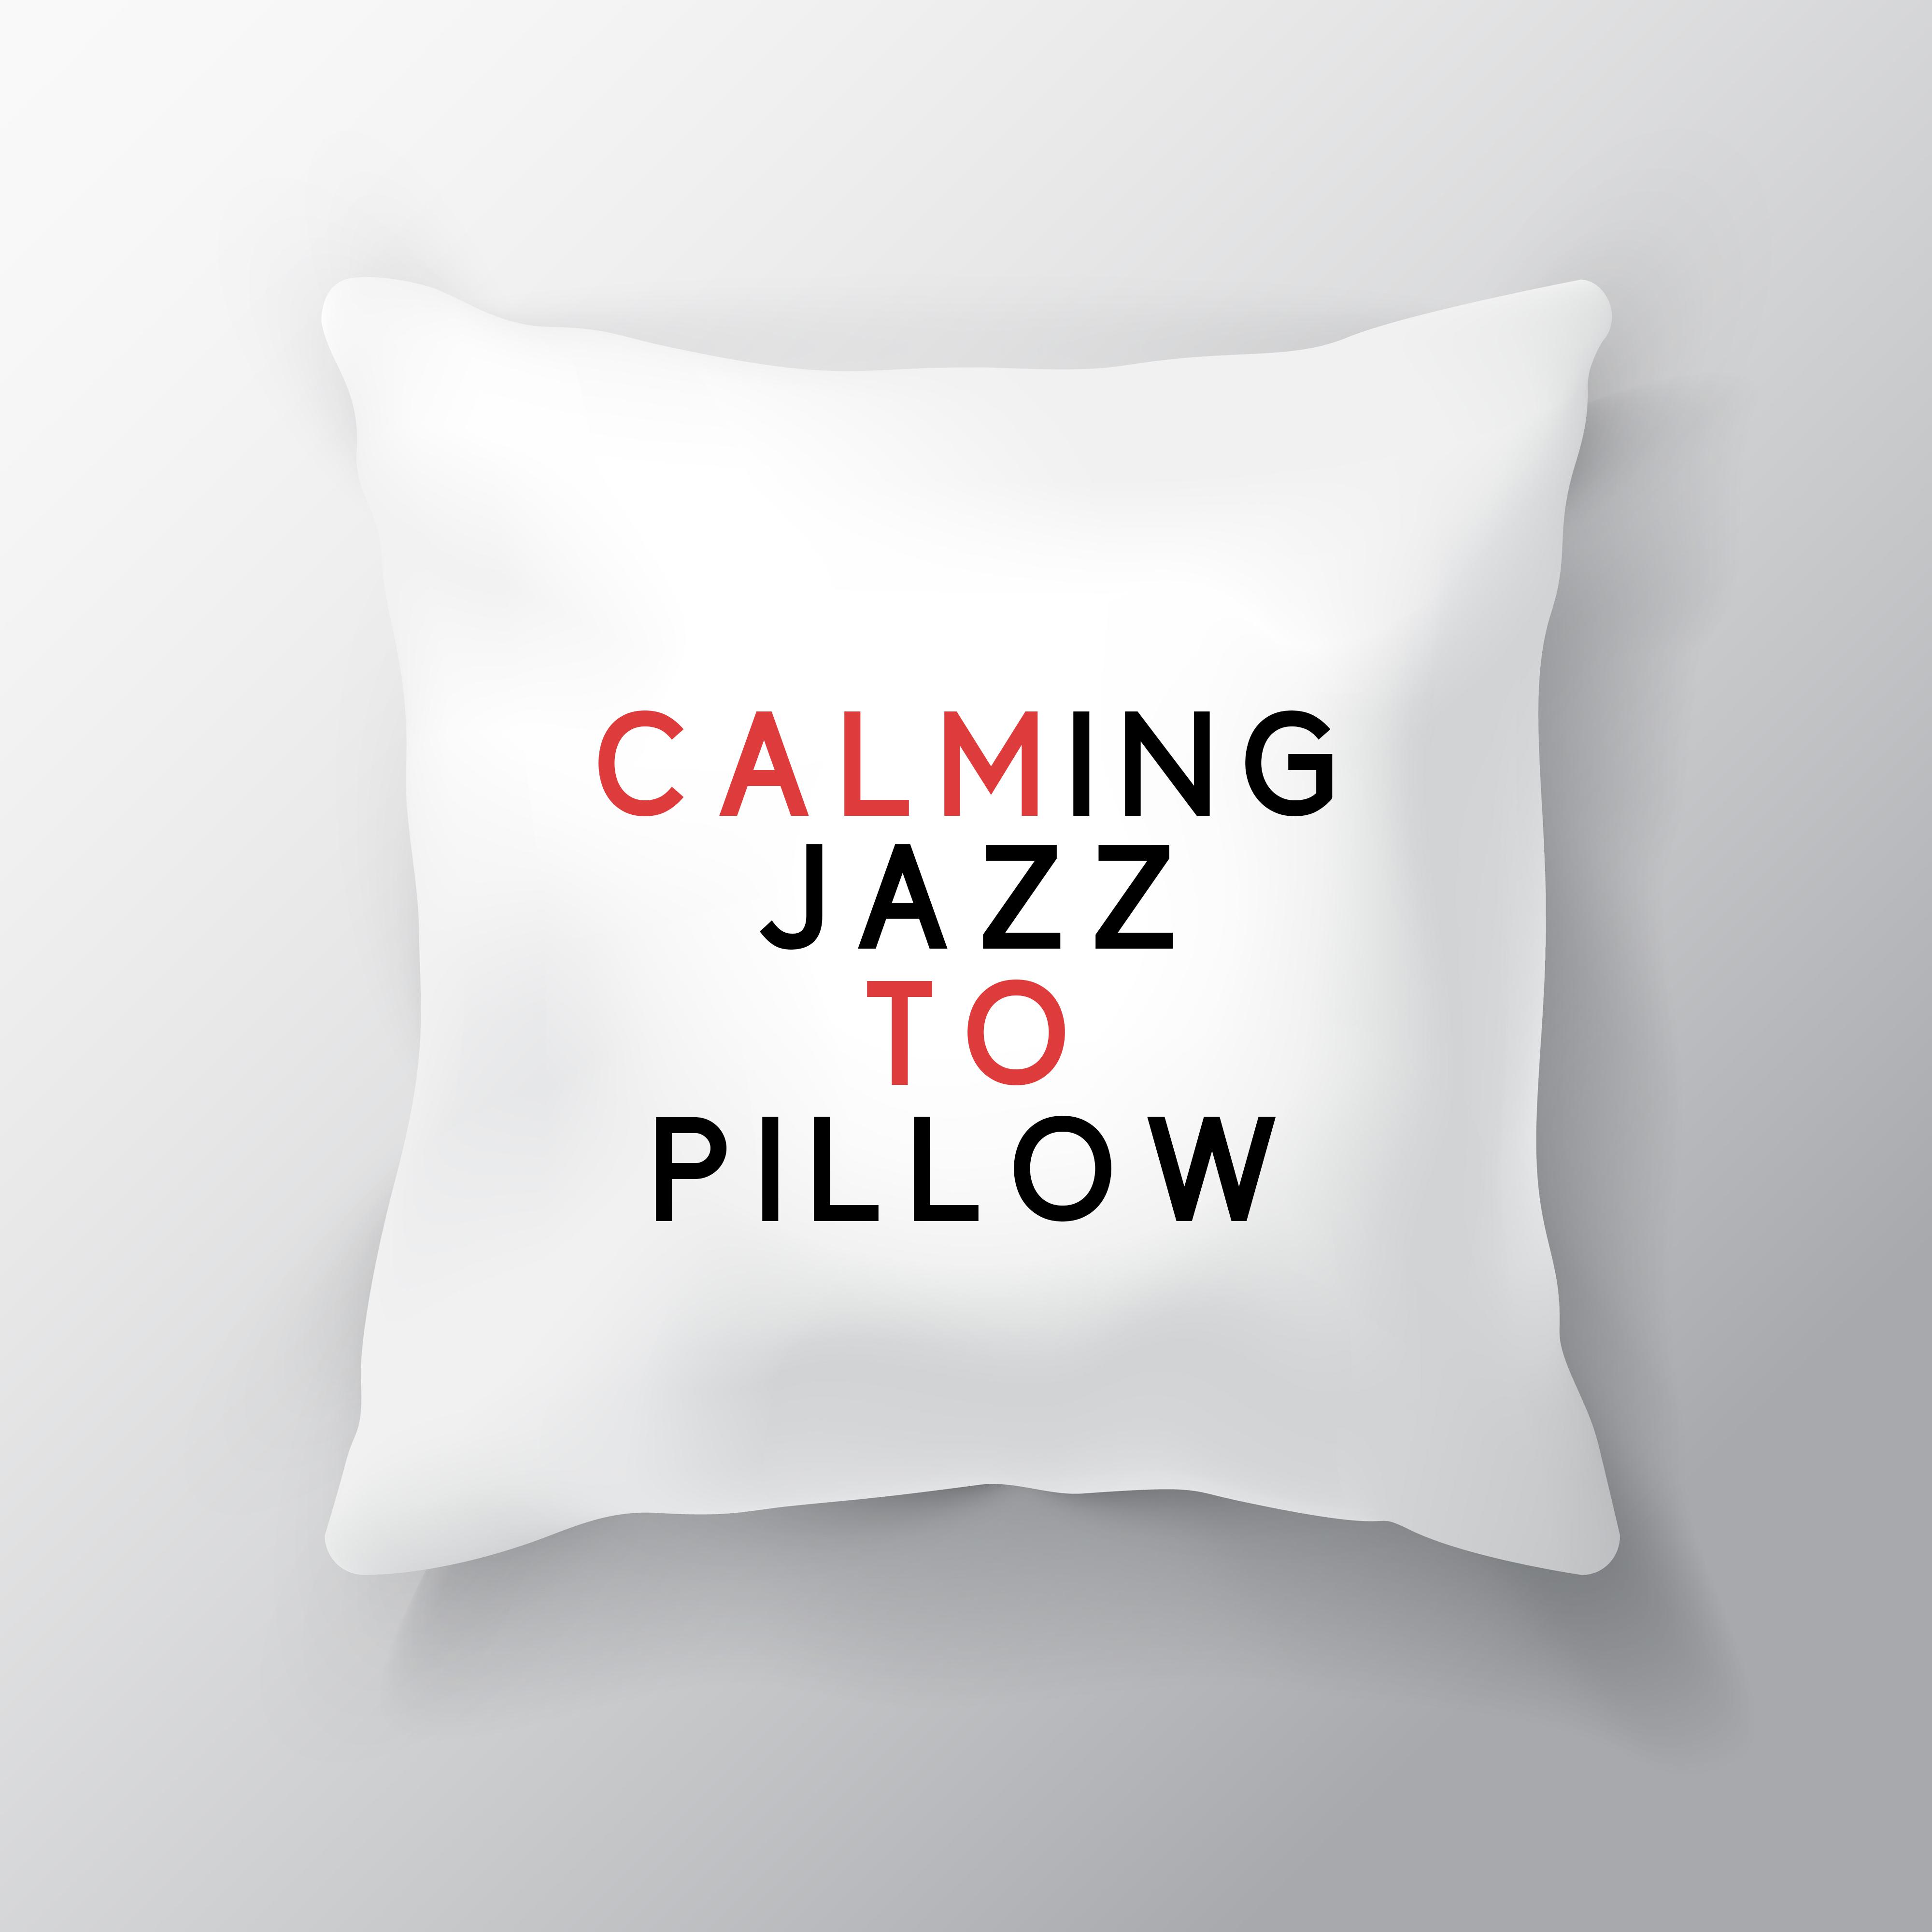 Calming Jazz to Pillow